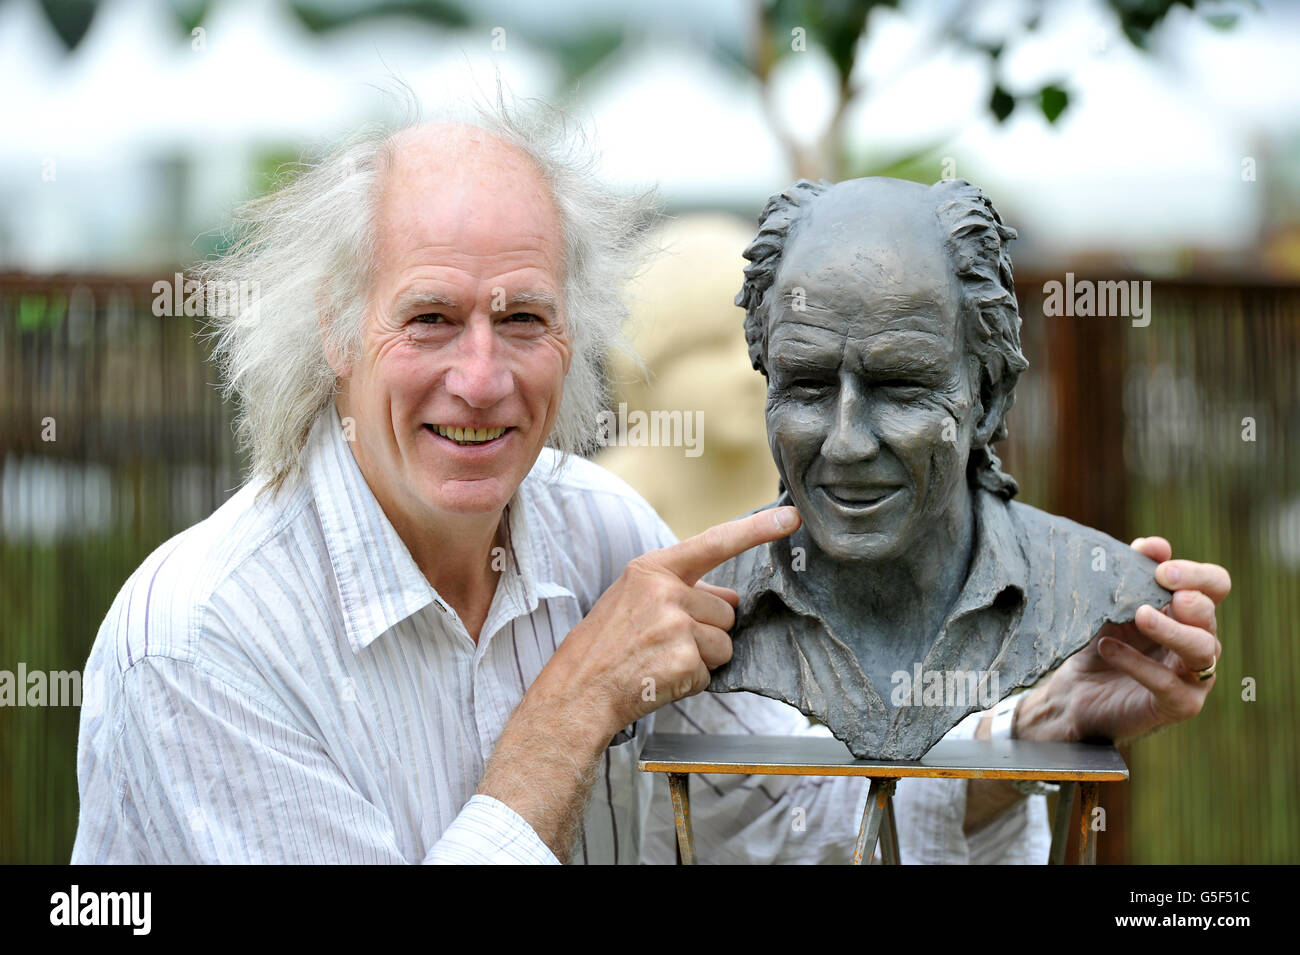 Terry Nutkins, personnalité de la télé de la faune, avec une sculpture de bronze de lui-même, réalisée par Nick Roberson, au RHS Flower Show à Tatton Park, Knutsford, Cheshire. Banque D'Images